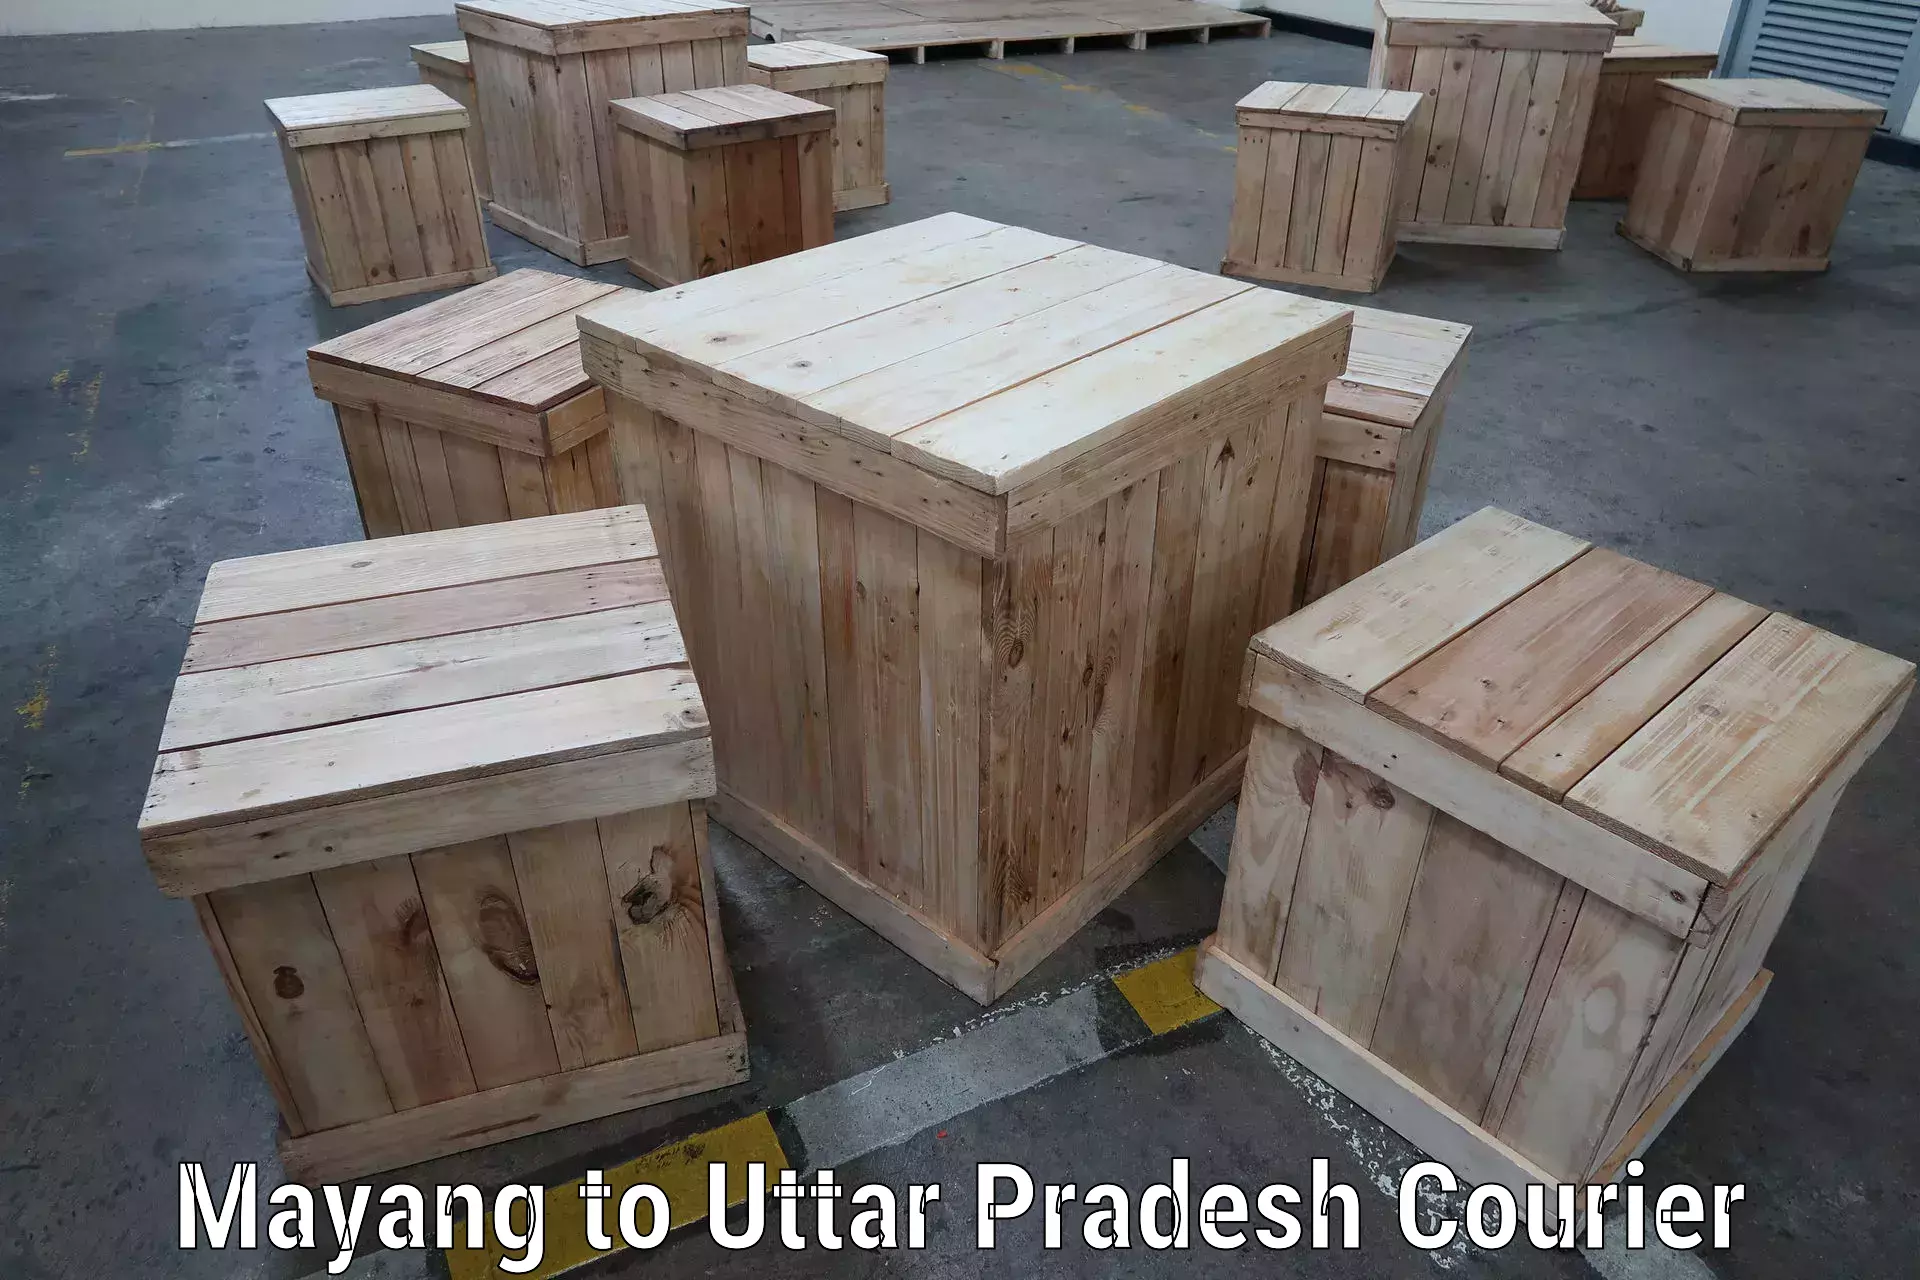 Global shipping networks Mayang to Uttar Pradesh